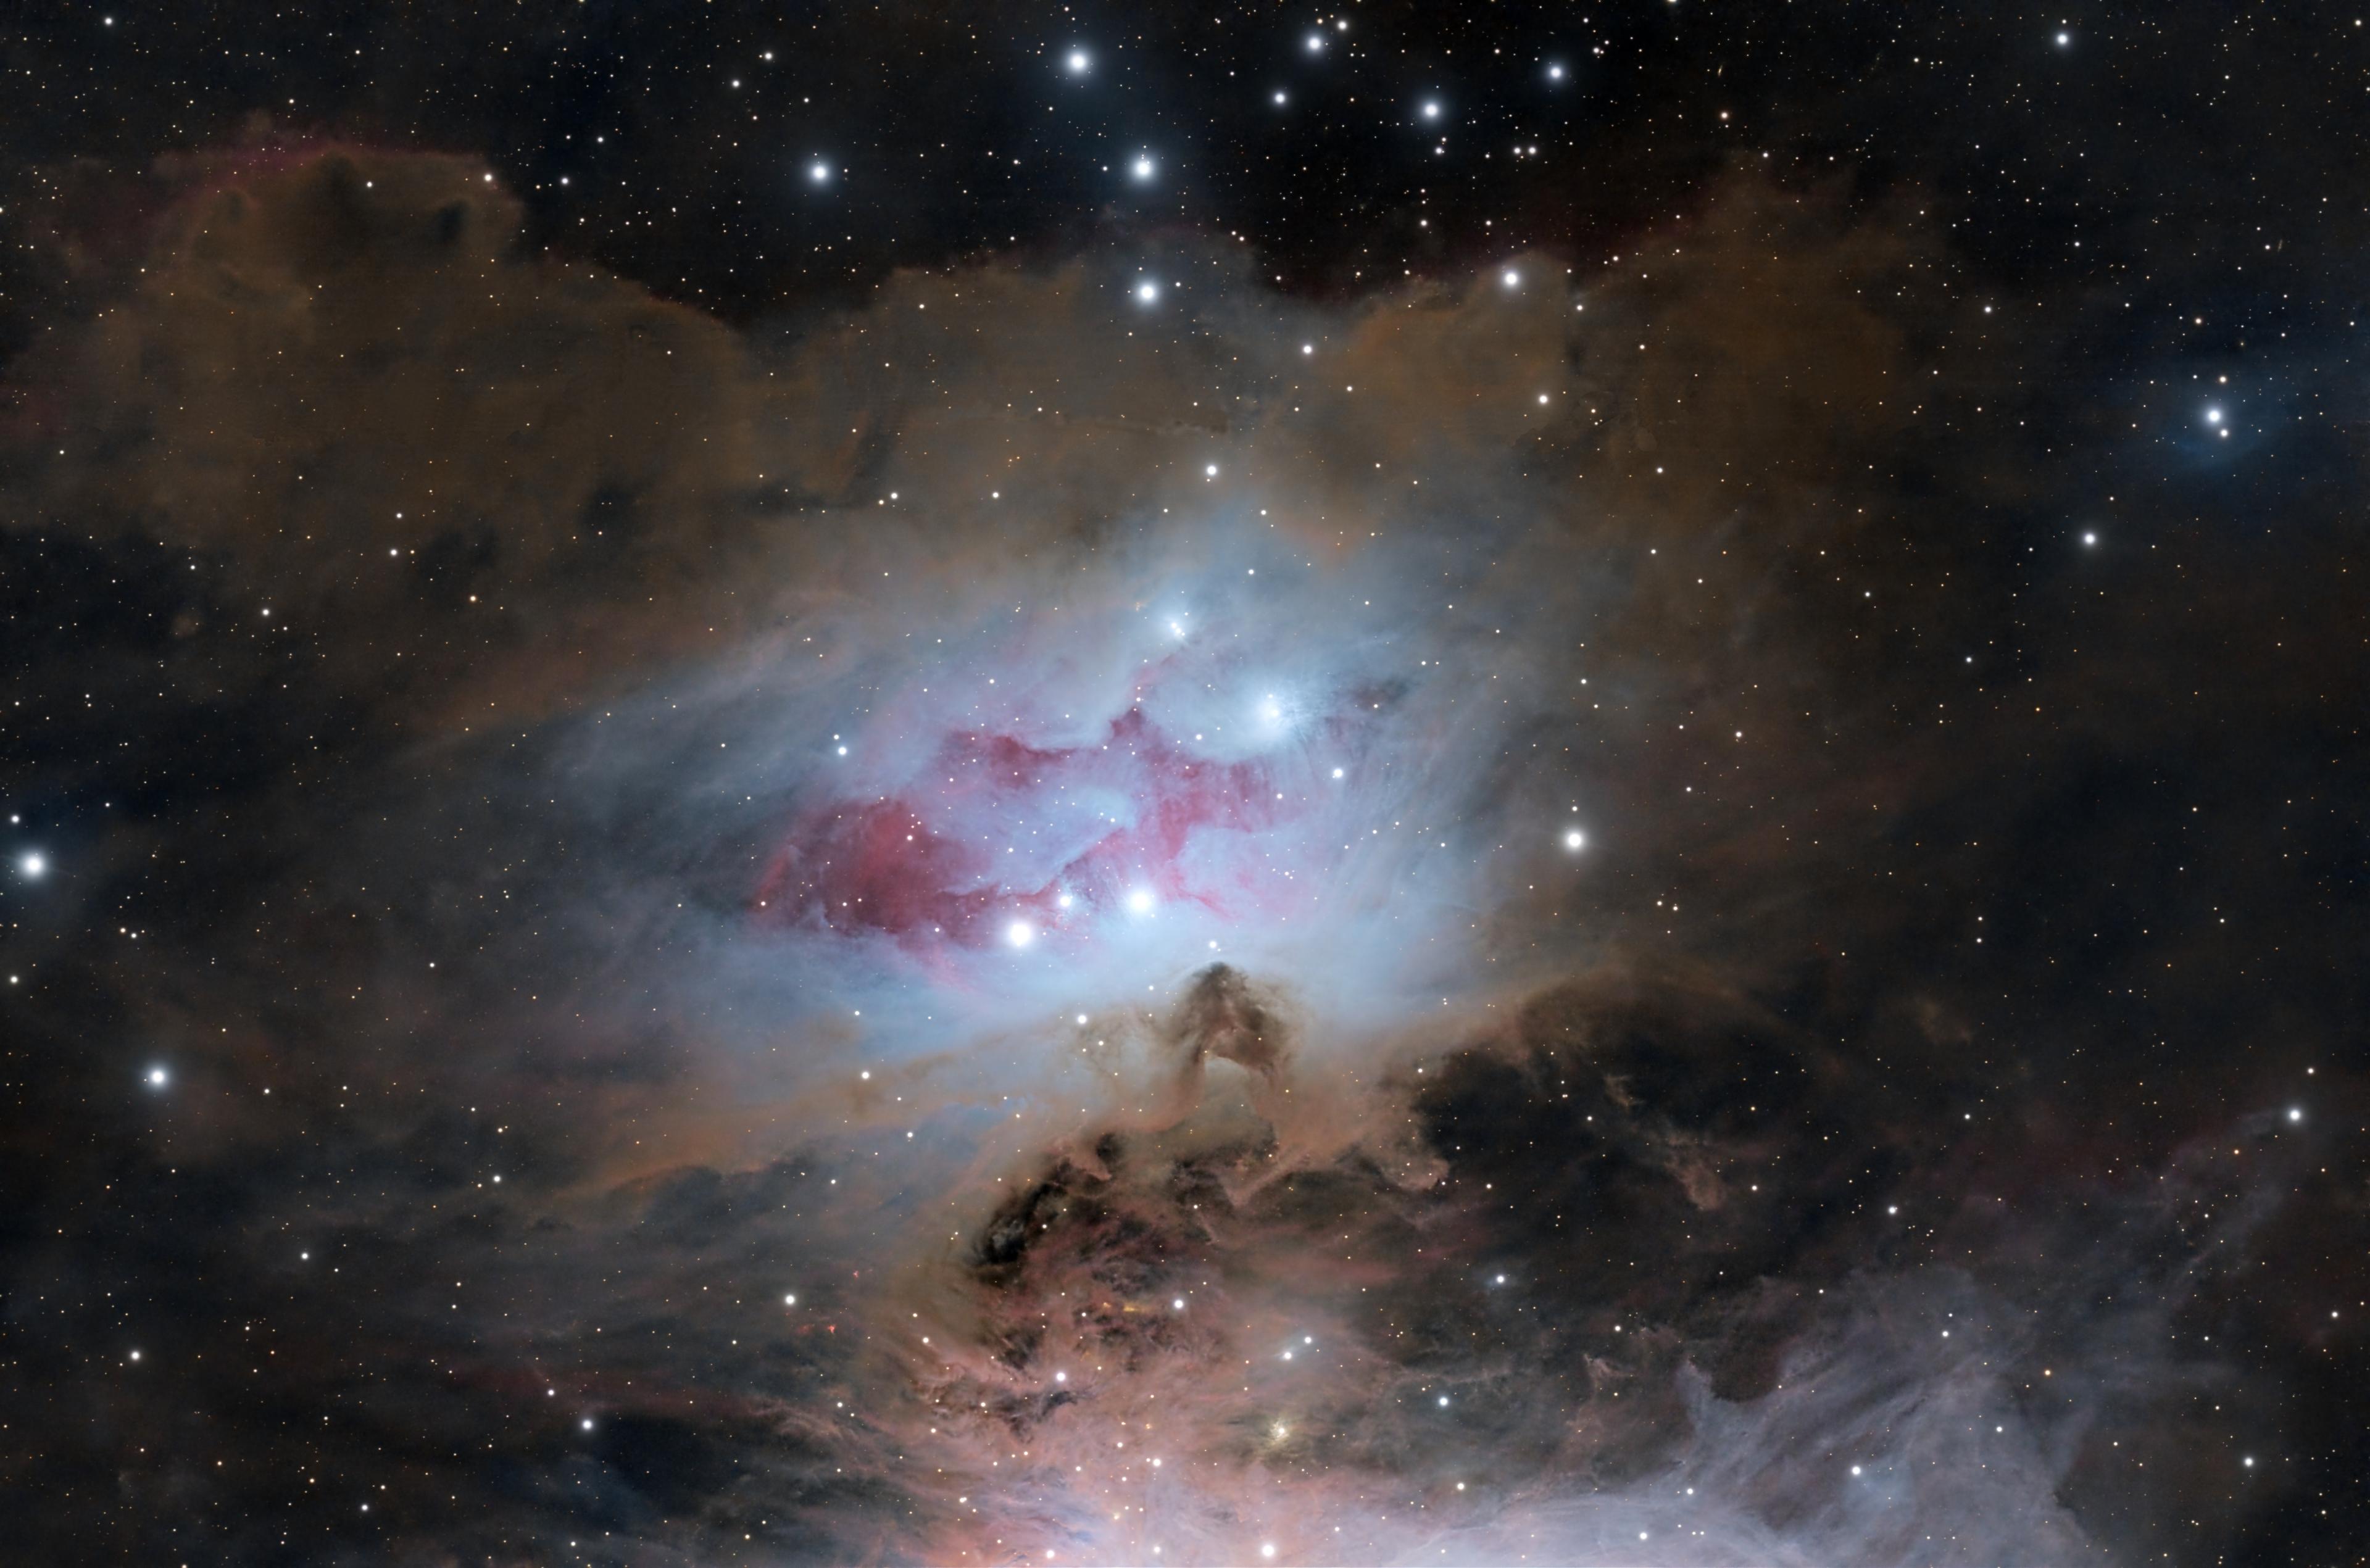 سديم انعكاسي يظهر بلون مزرقّ مع امتداد محمرّ داخله وانتشار غبار بينجمي حوله، مع تناثر النجوم عبر الصورة